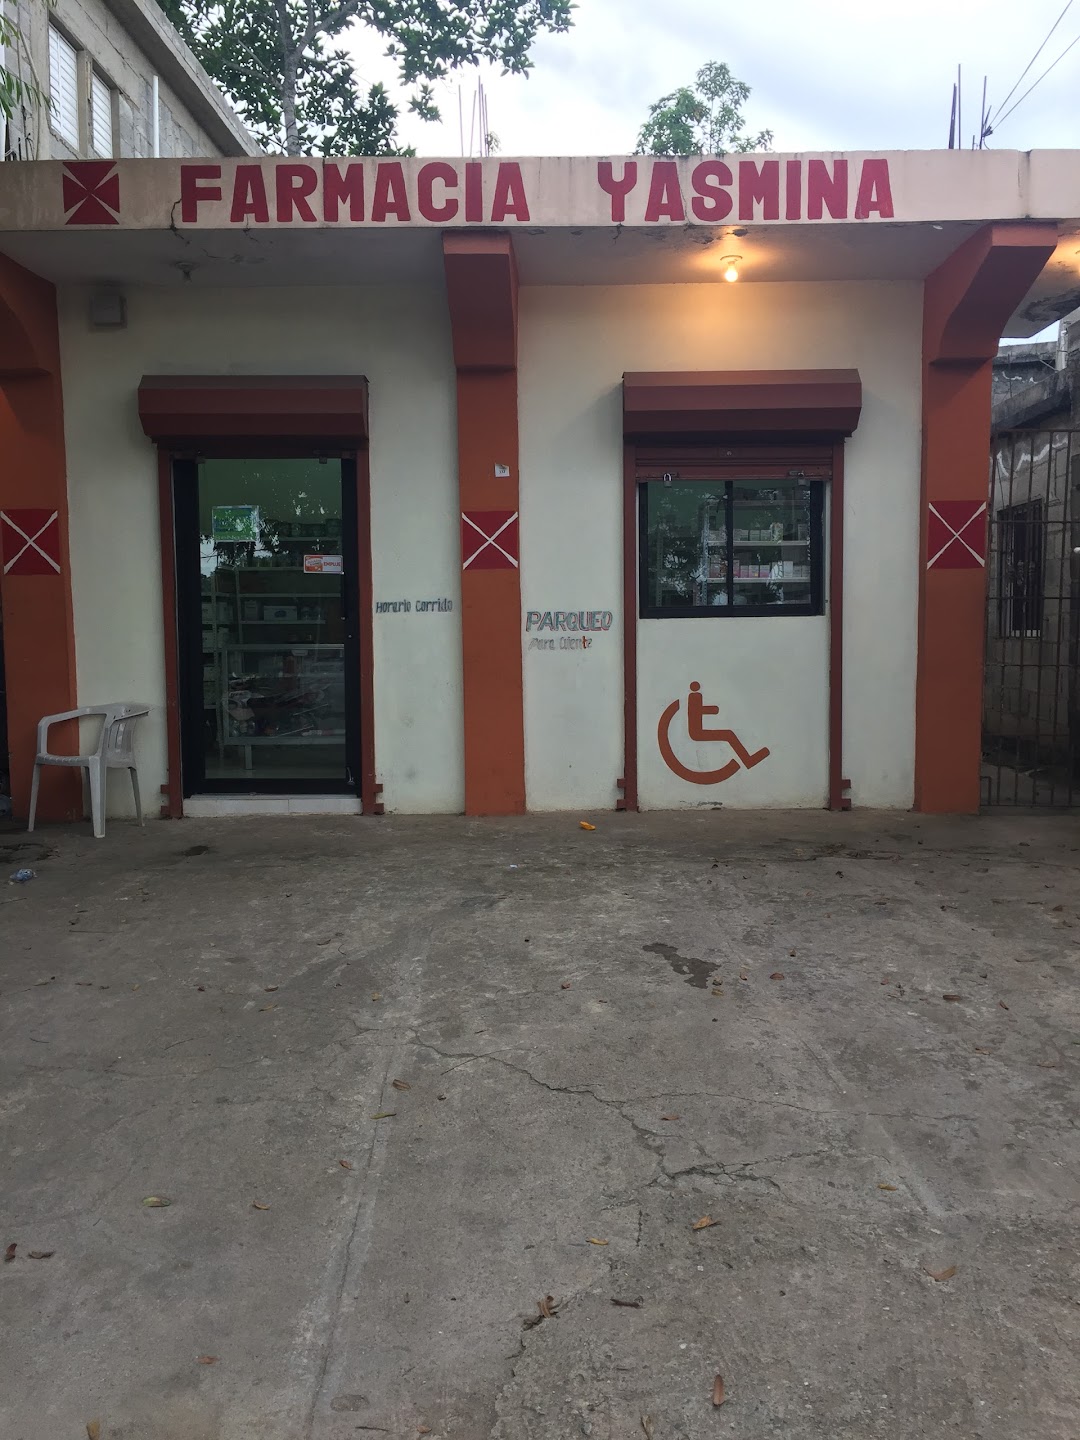 Farmacia Yasmina